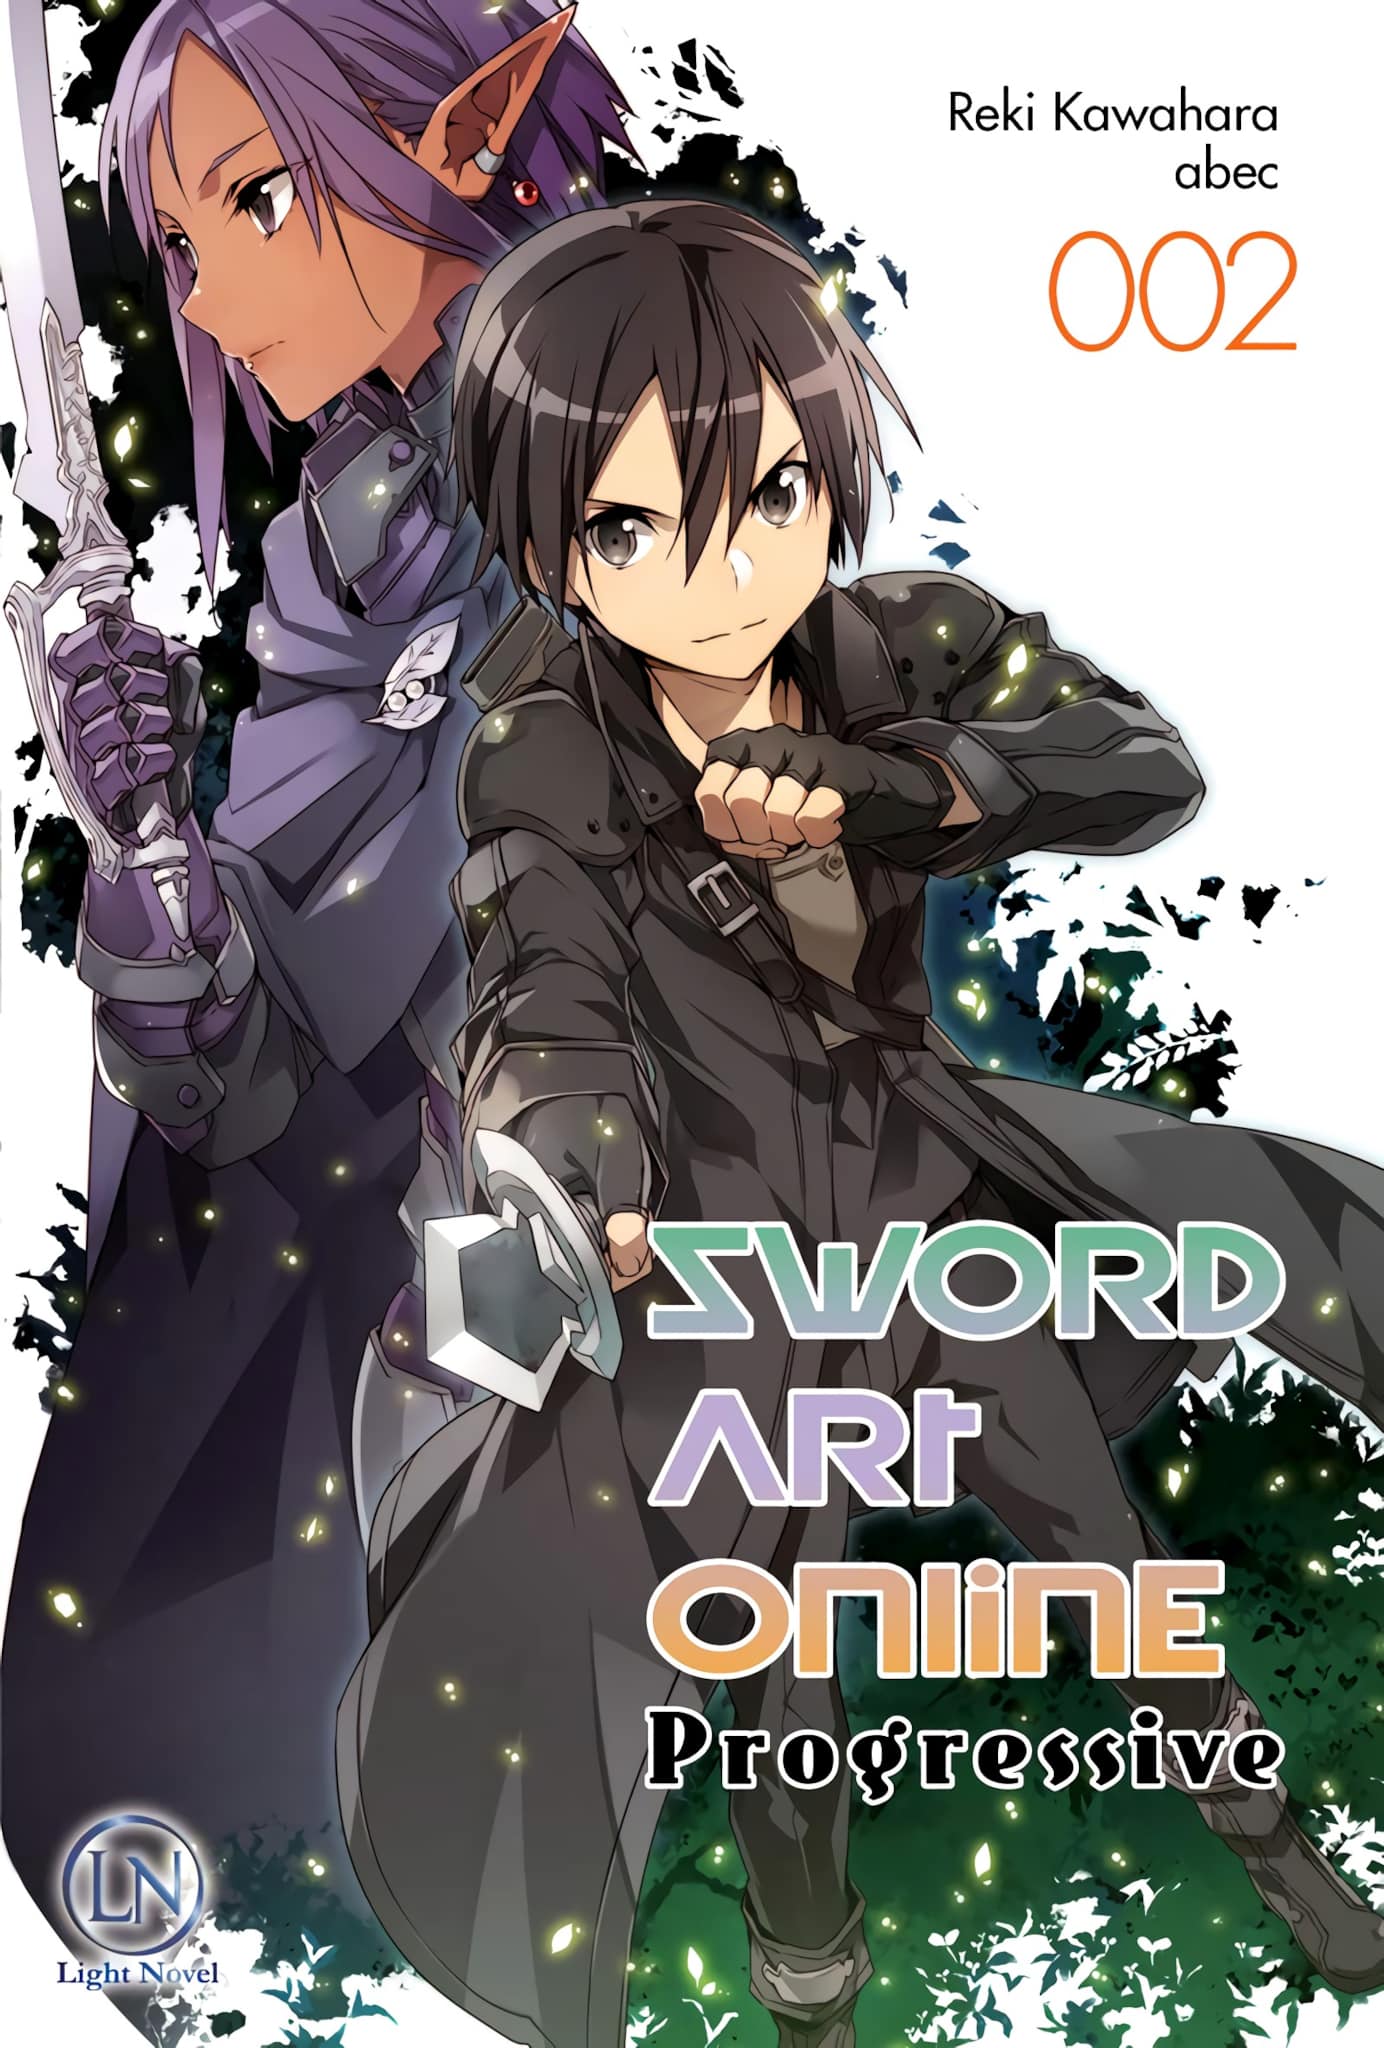 Tome 1 du light novel Sword Art Online : Progressive